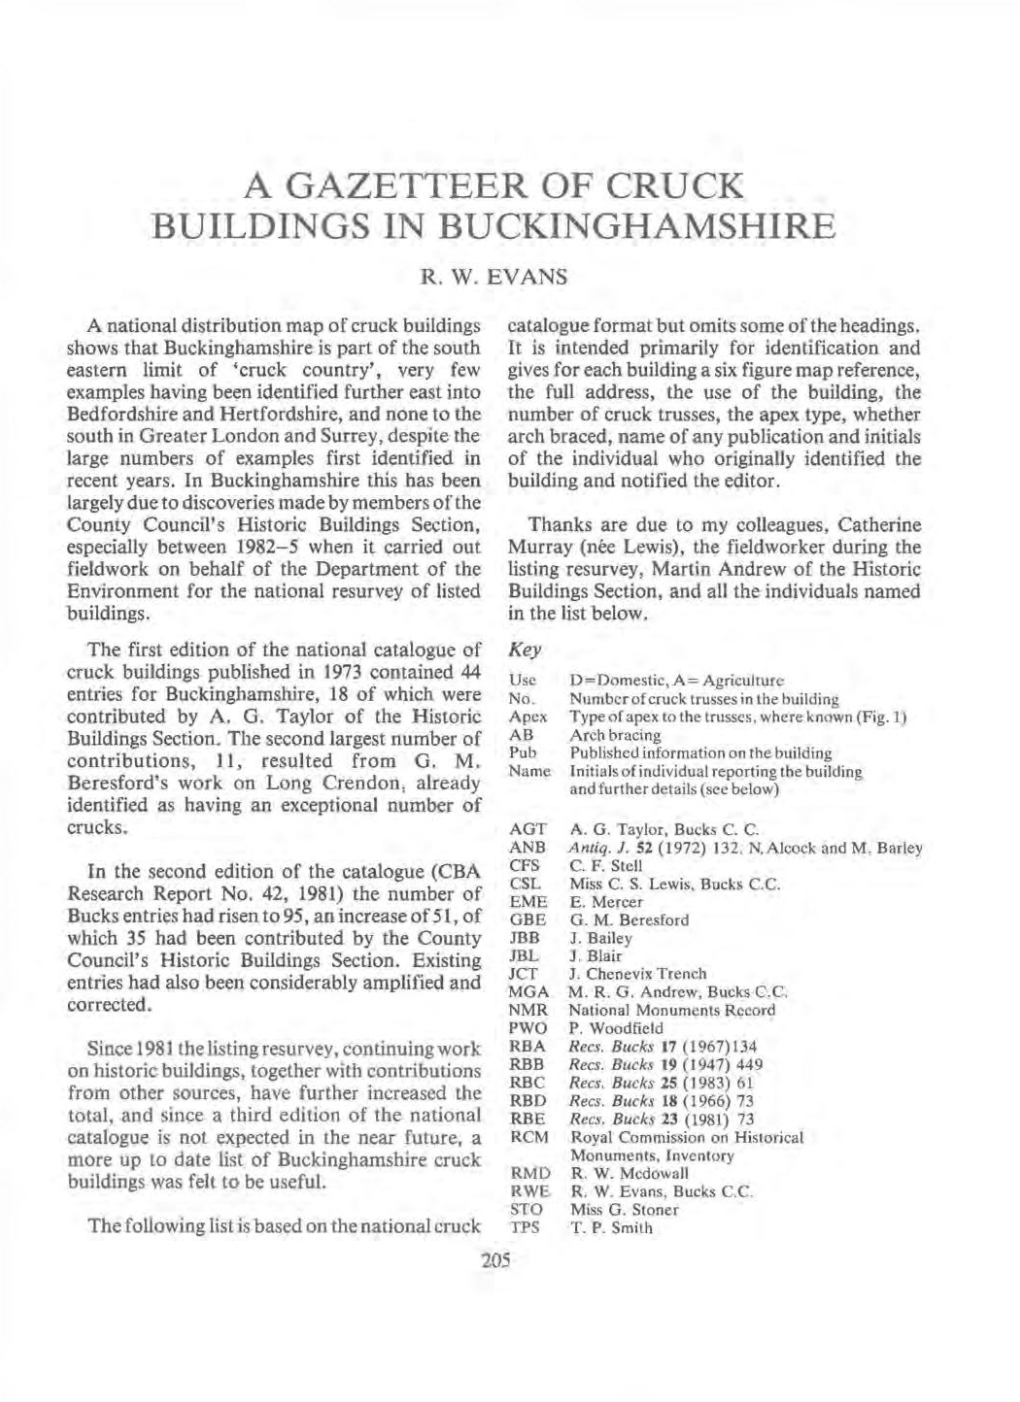 A Gazetteer of Cruck Buildings in Buckinghamshire. R W Evans